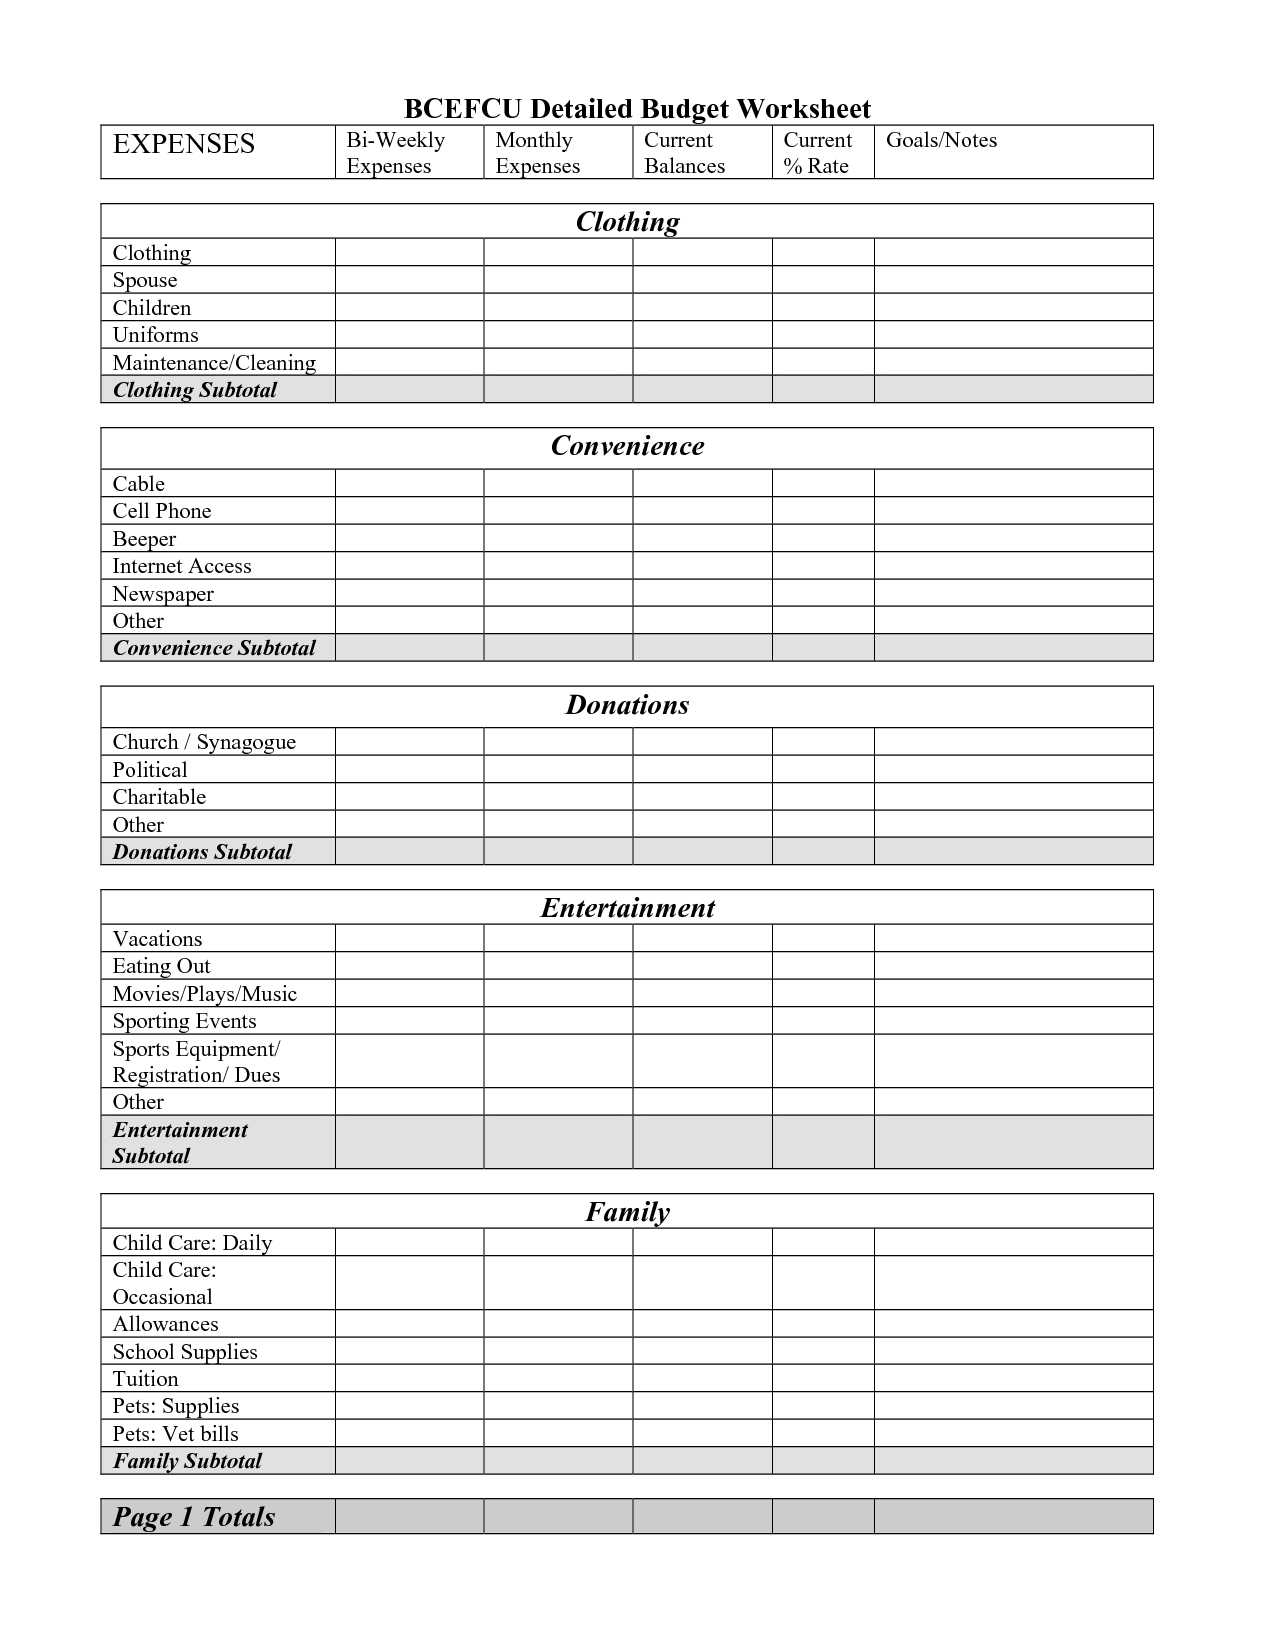 Home Budget Worksheet Pdf or Free Printable Monthly Bud Worksheet